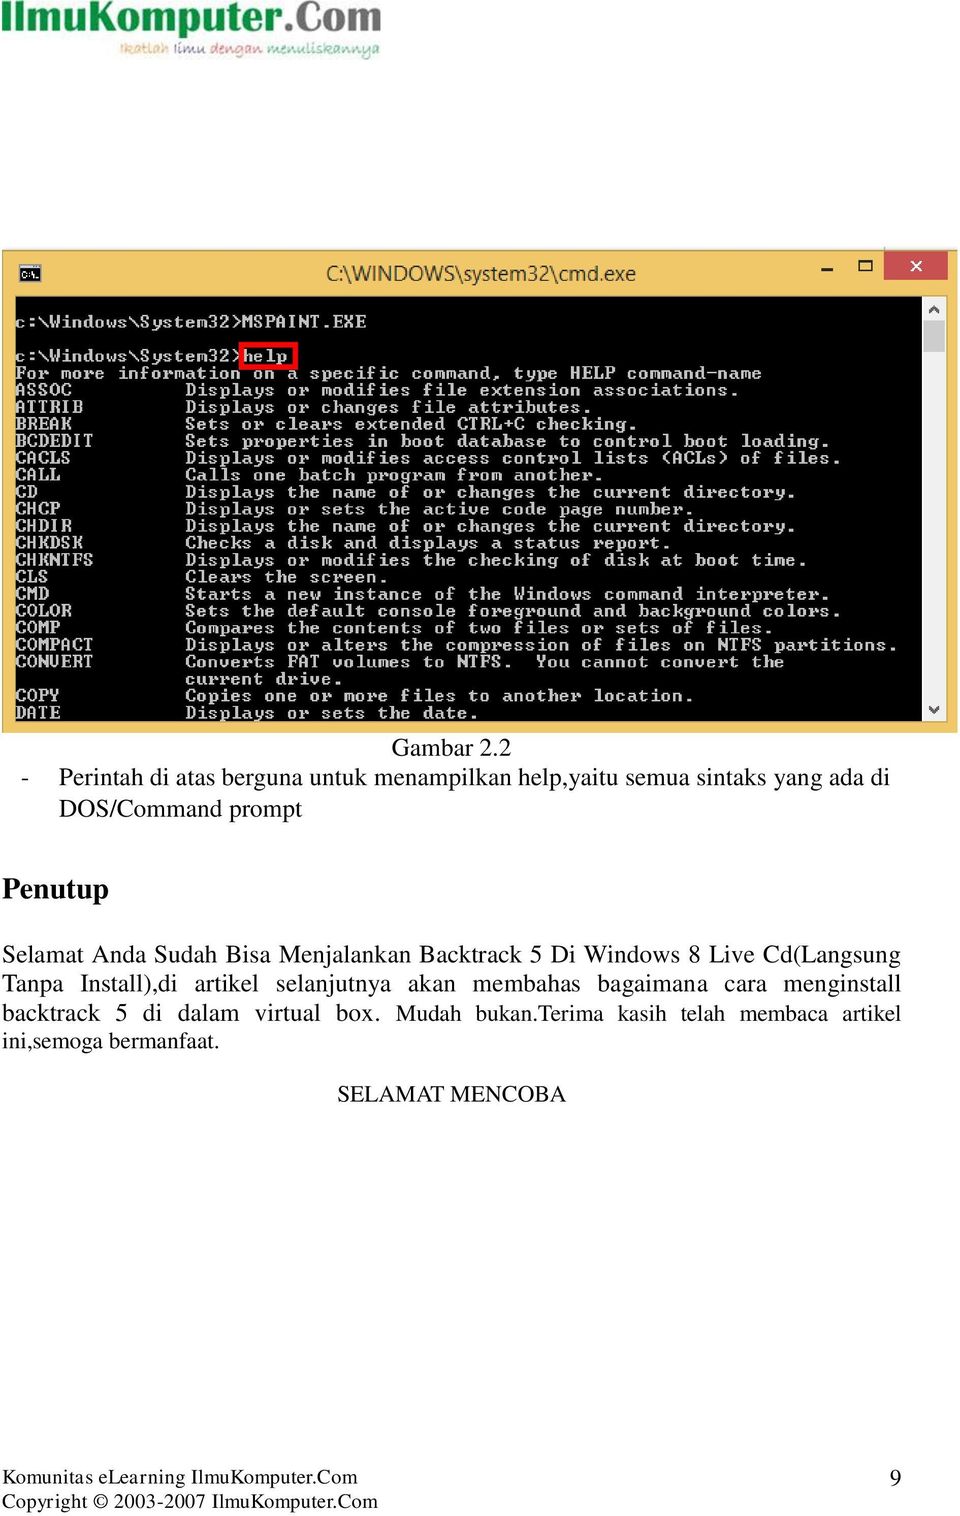 prompt Penutup Selamat Anda Sudah Bisa Menjalankan Backtrack 5 Di Windows 8 Live Cd(Langsung Tanpa